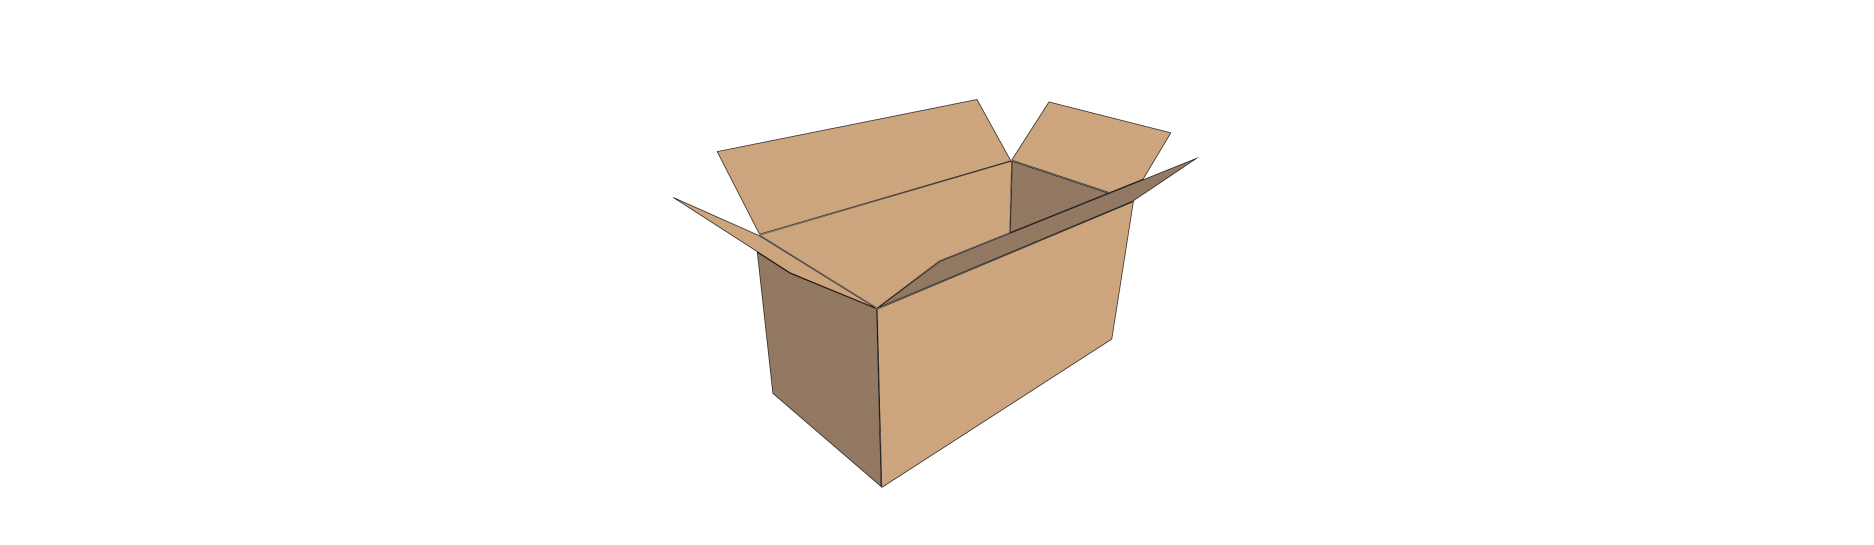 Kartonové boxy z pětivrstvé lepenky (5VVL) jsou velice pevné a skvěle vám poslouží jako obalový materiál větších zásilek. Jsou vhodné jak pro přepravu středně těžkého produktu, tak i pro výborné skladování zboží. 